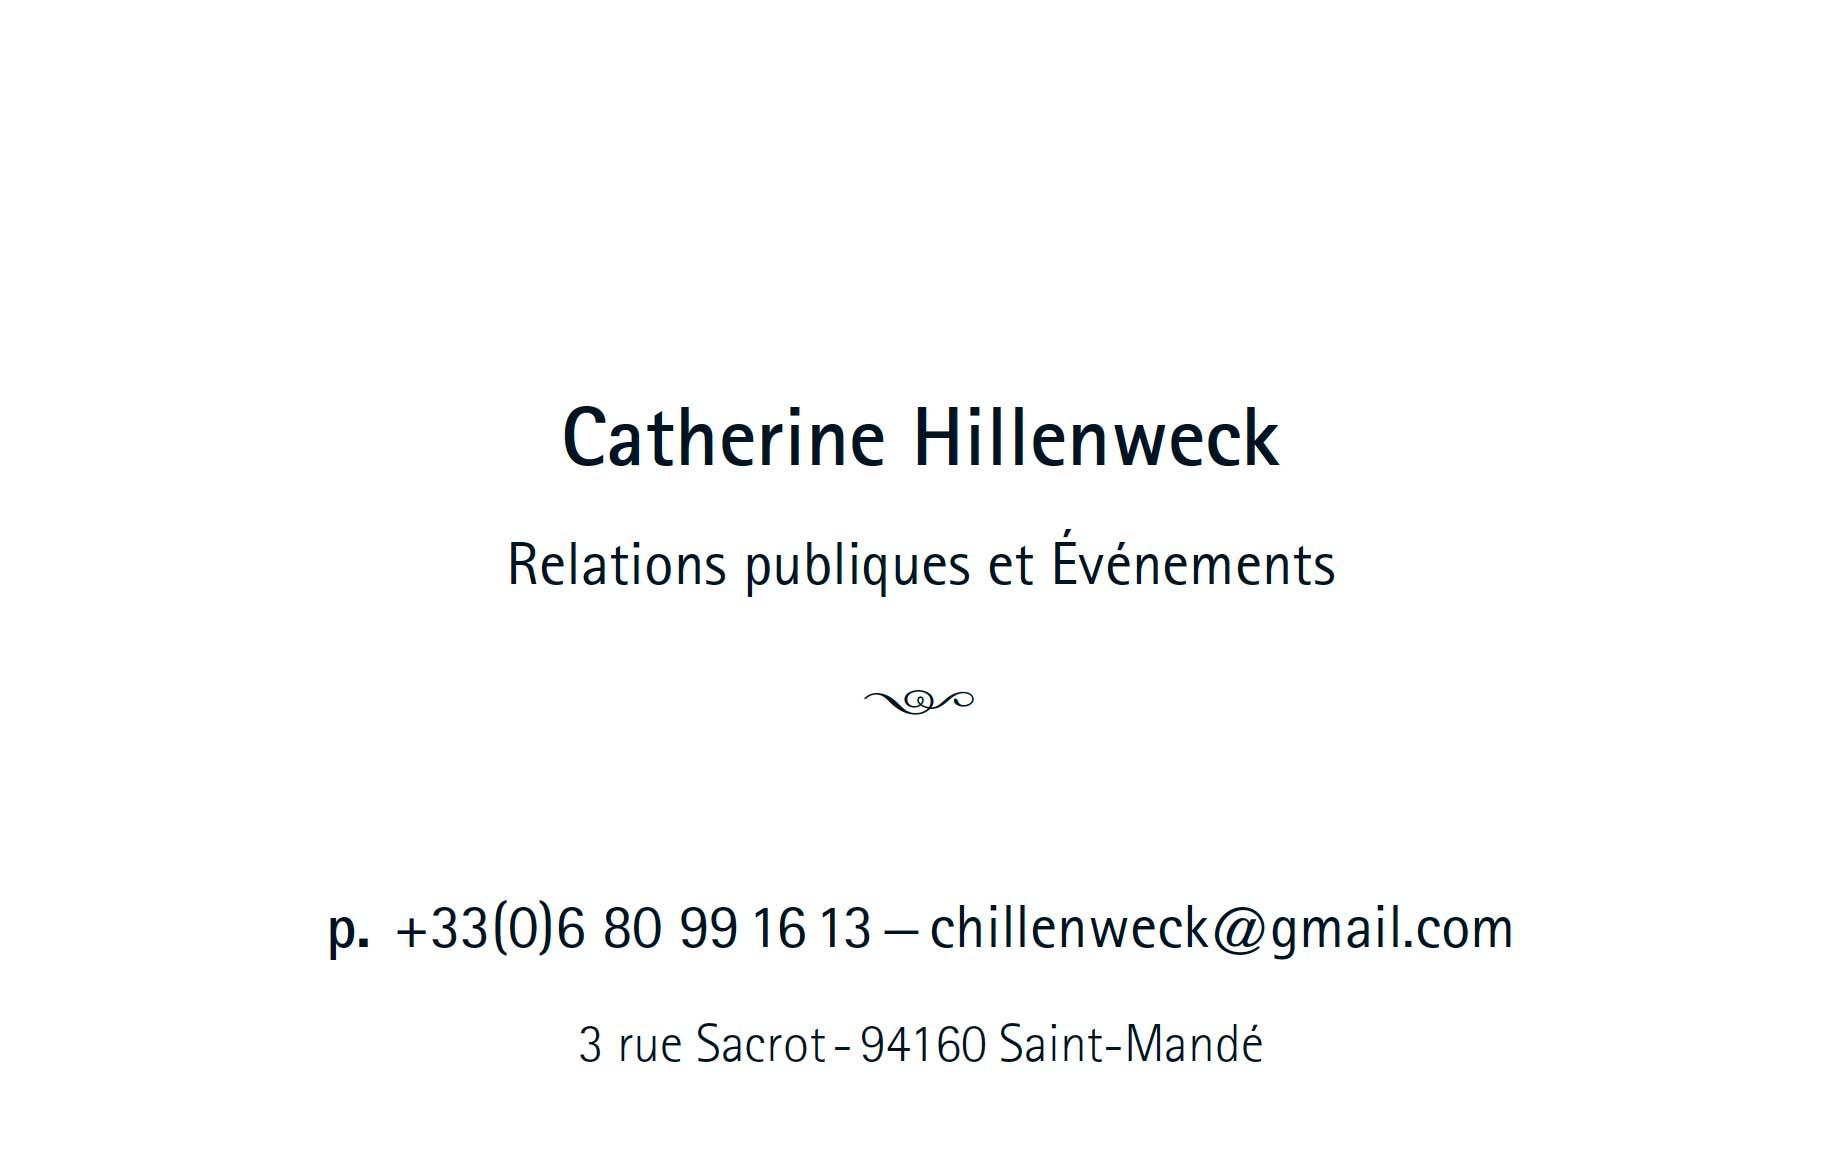 Catherine Hillenweck. Cartes de Visite. Création, réalisation, impression. Recto